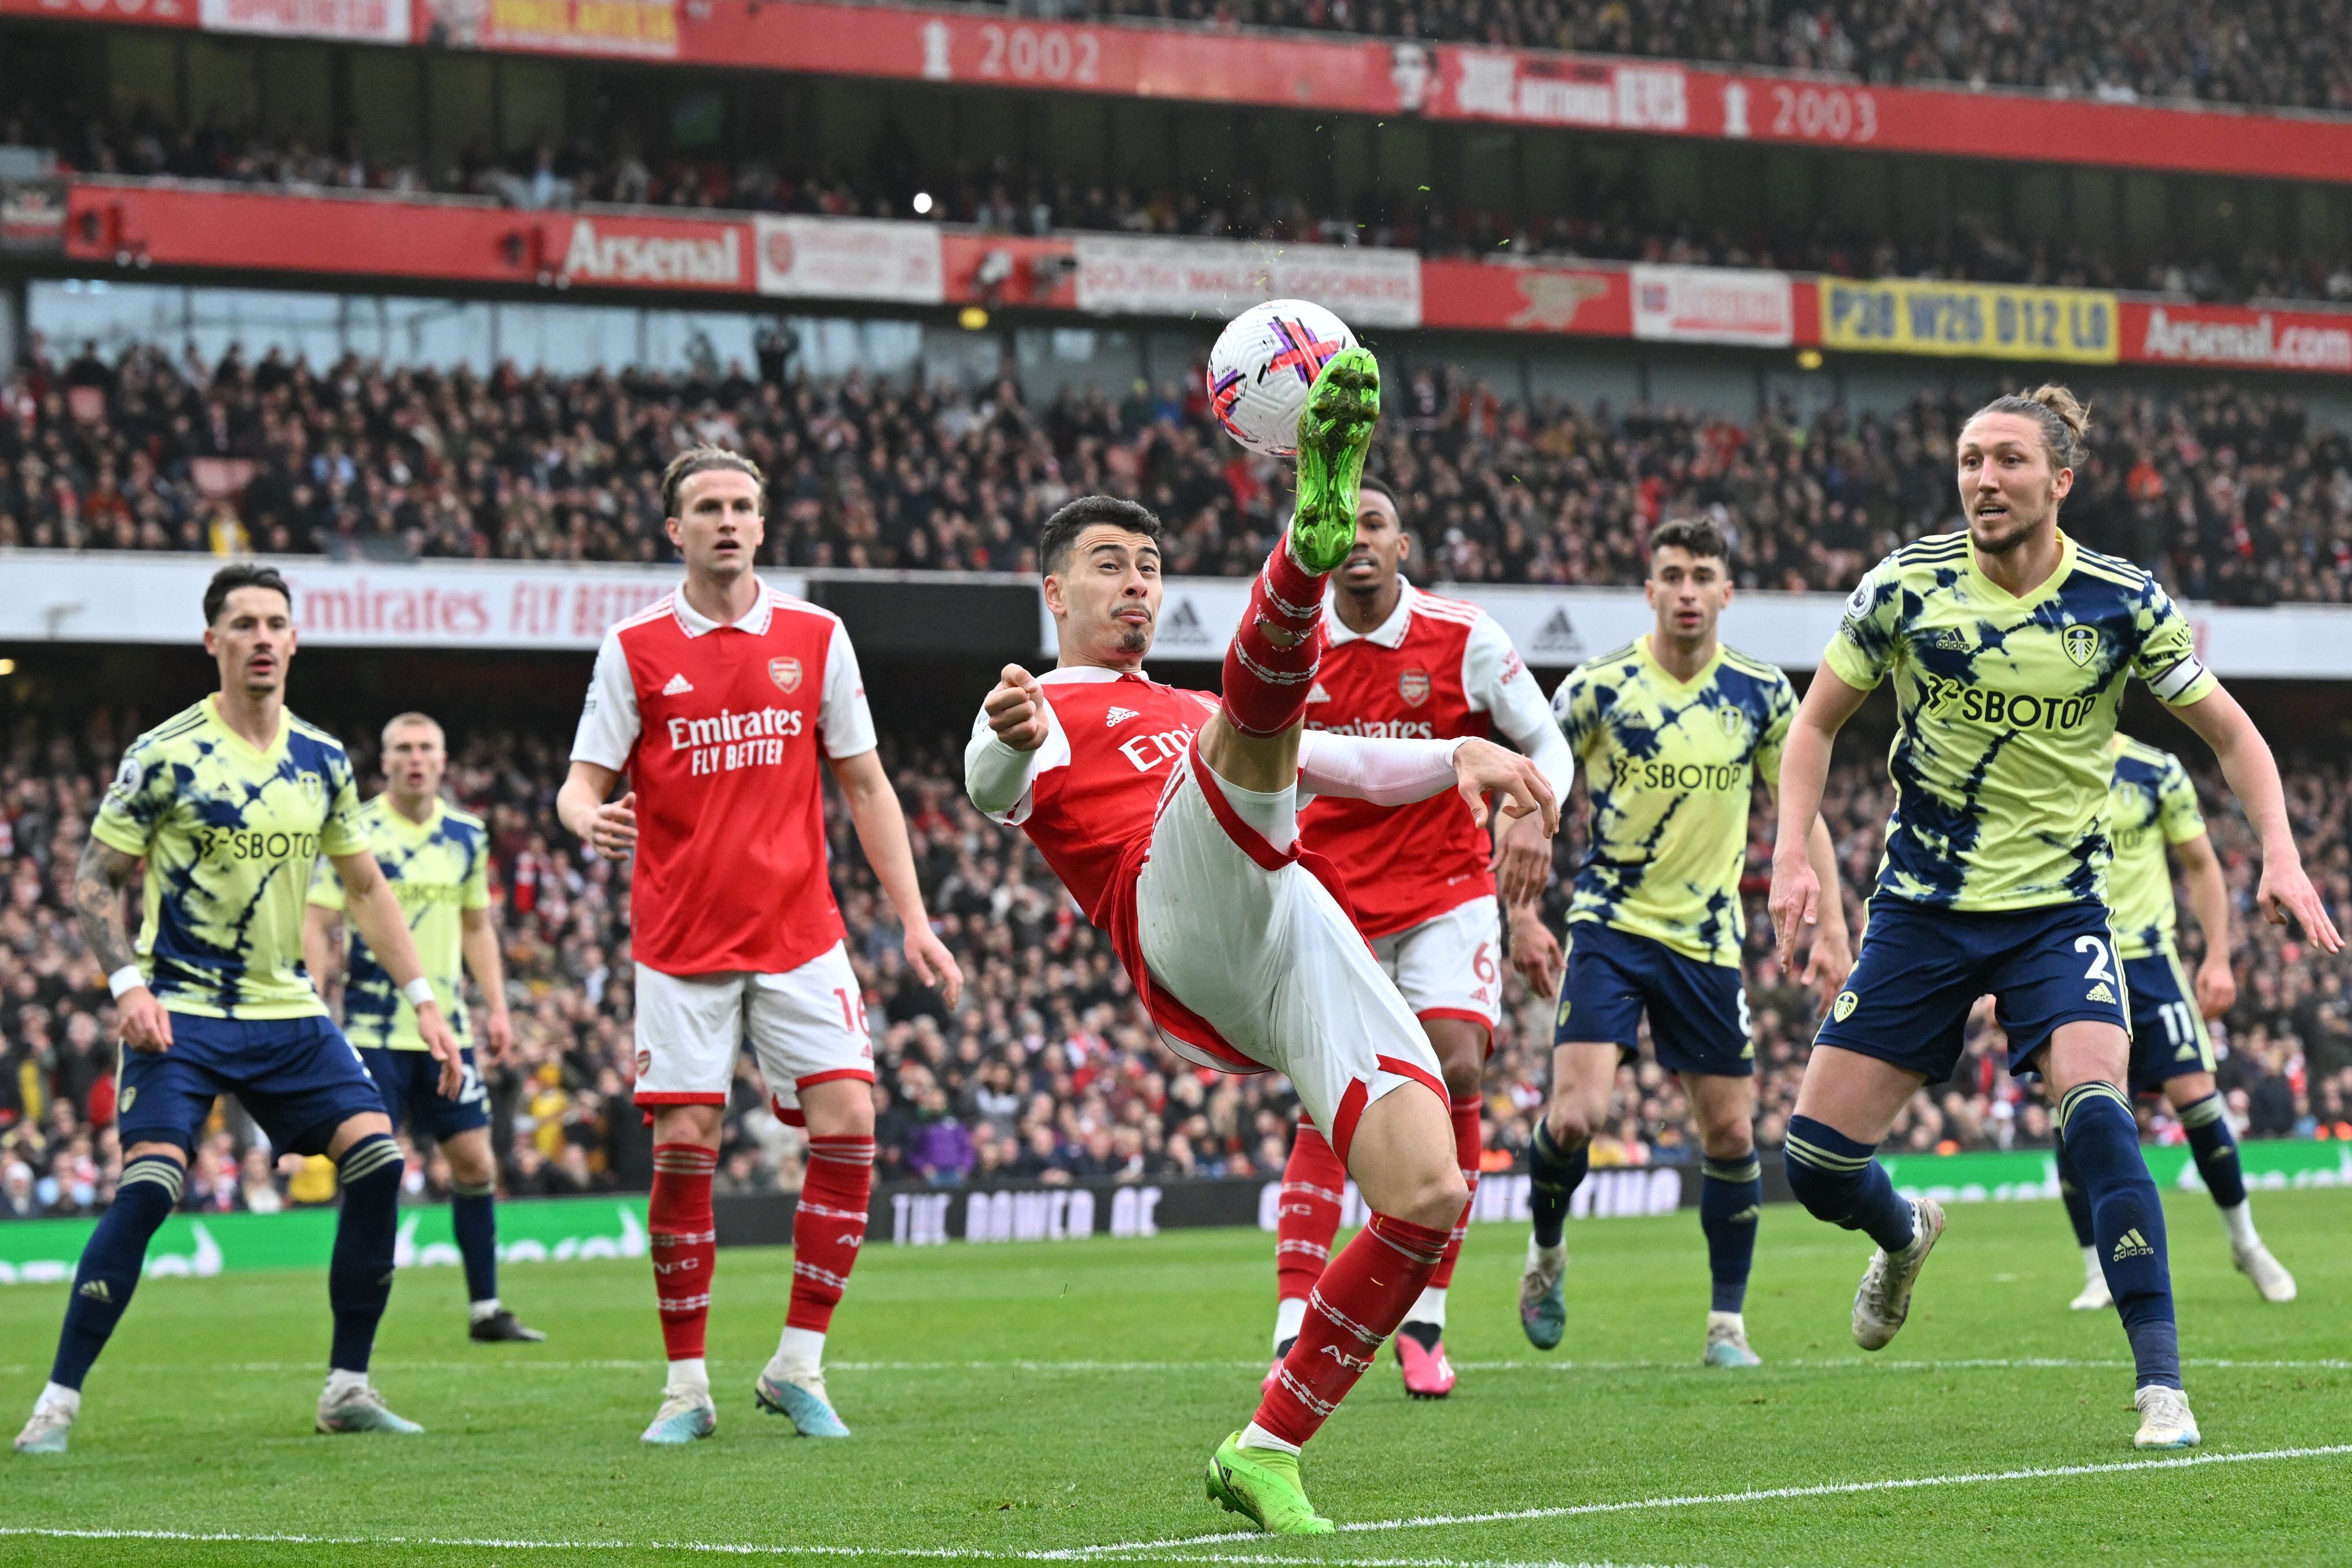 El Arsenal consiguió la sétima victoria seguida en la Premier League. Aquí Gabriel Martinelli (centro) controla el balón.